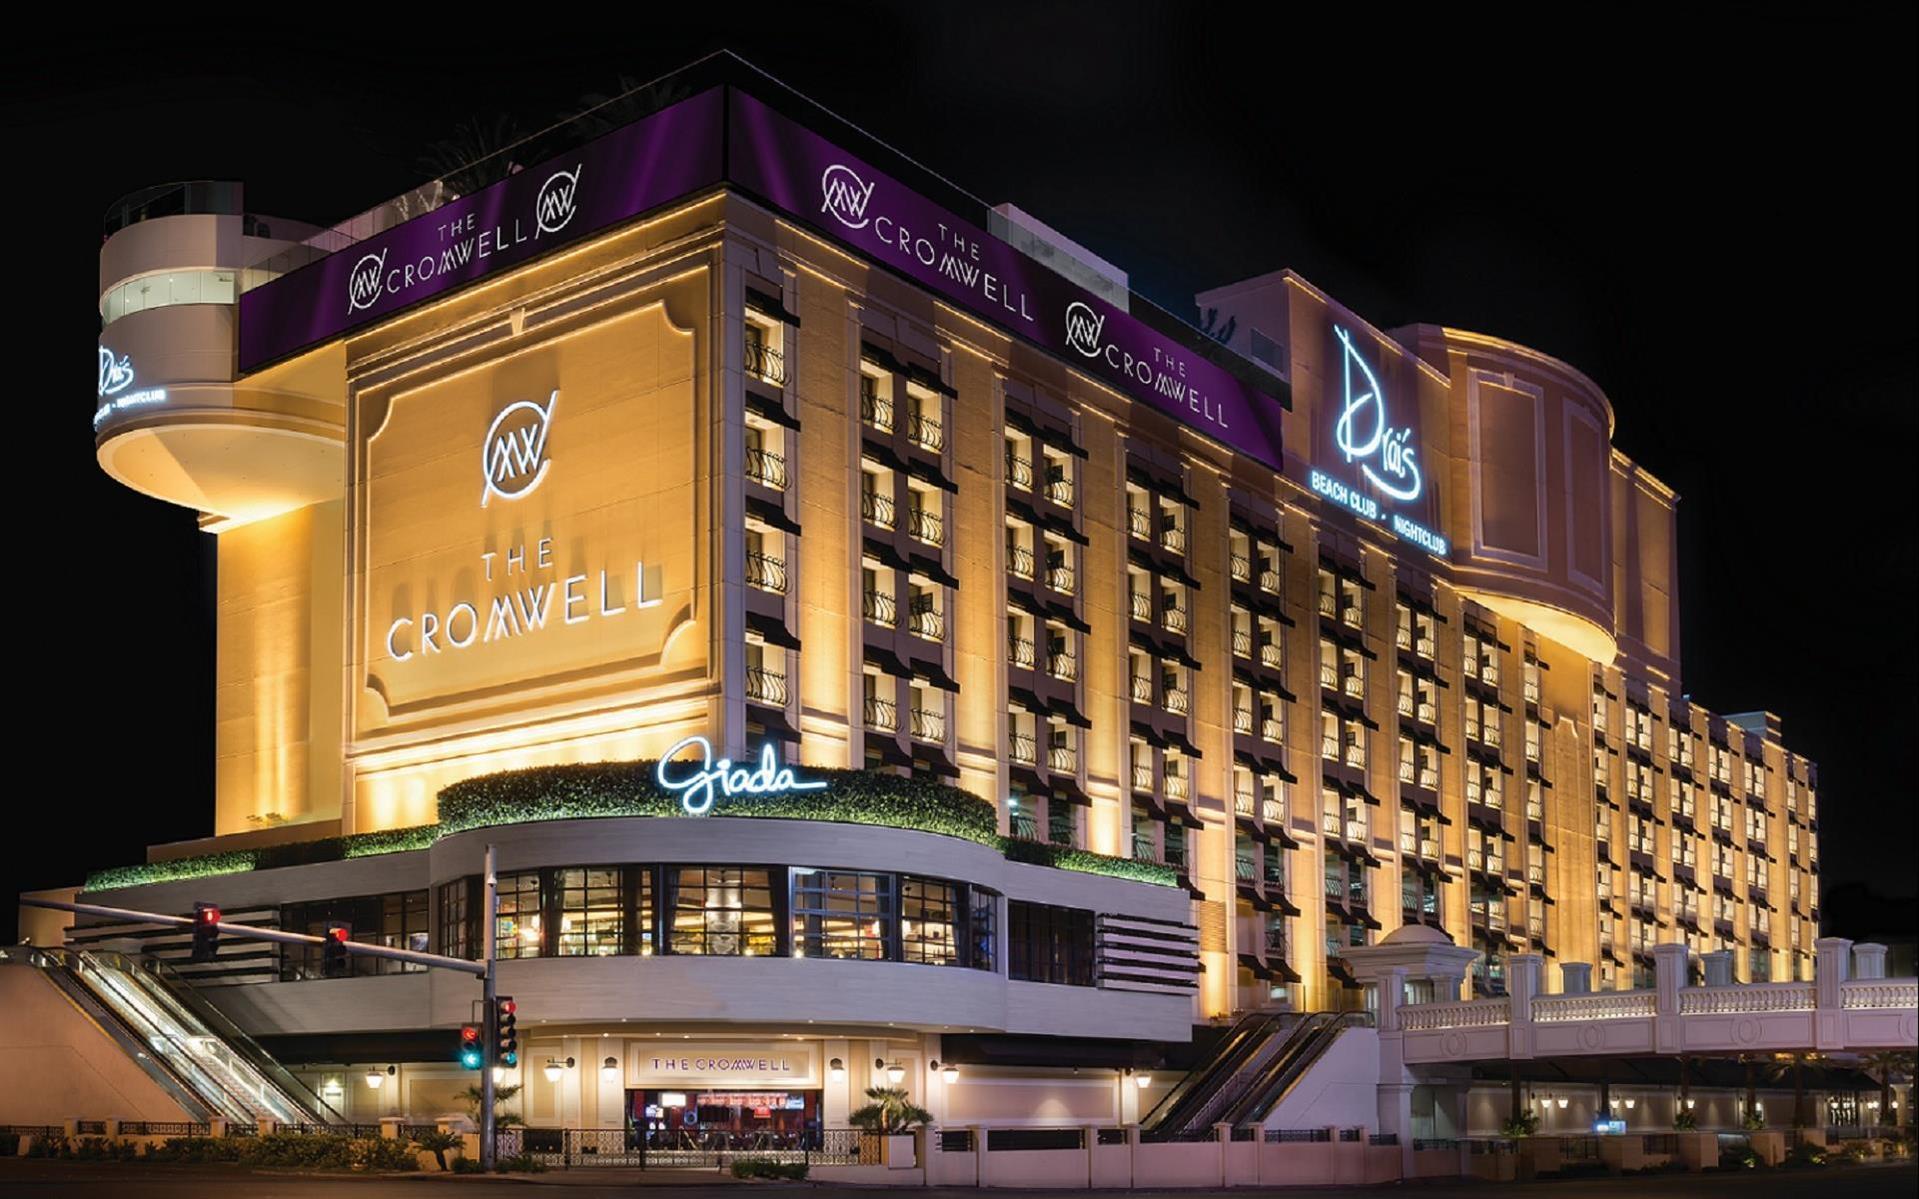 The Cromwell in Las Vegas, NV